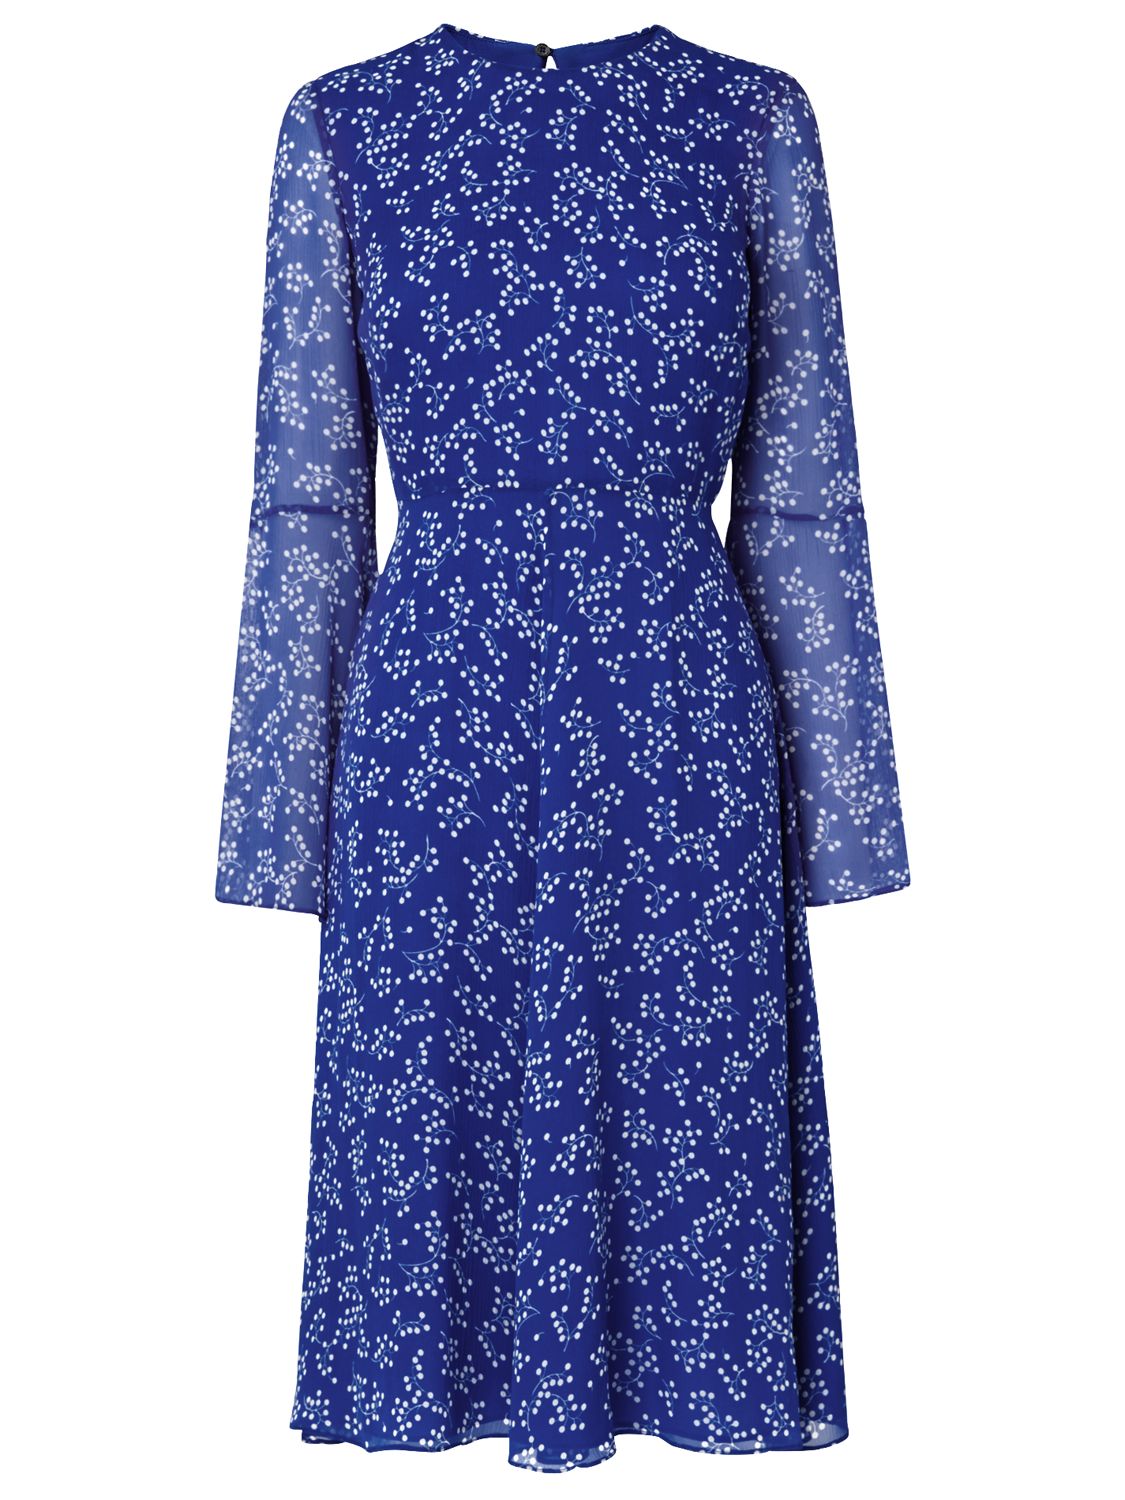 L.K. Bennett Cecily Silk Dress, Blue, 8